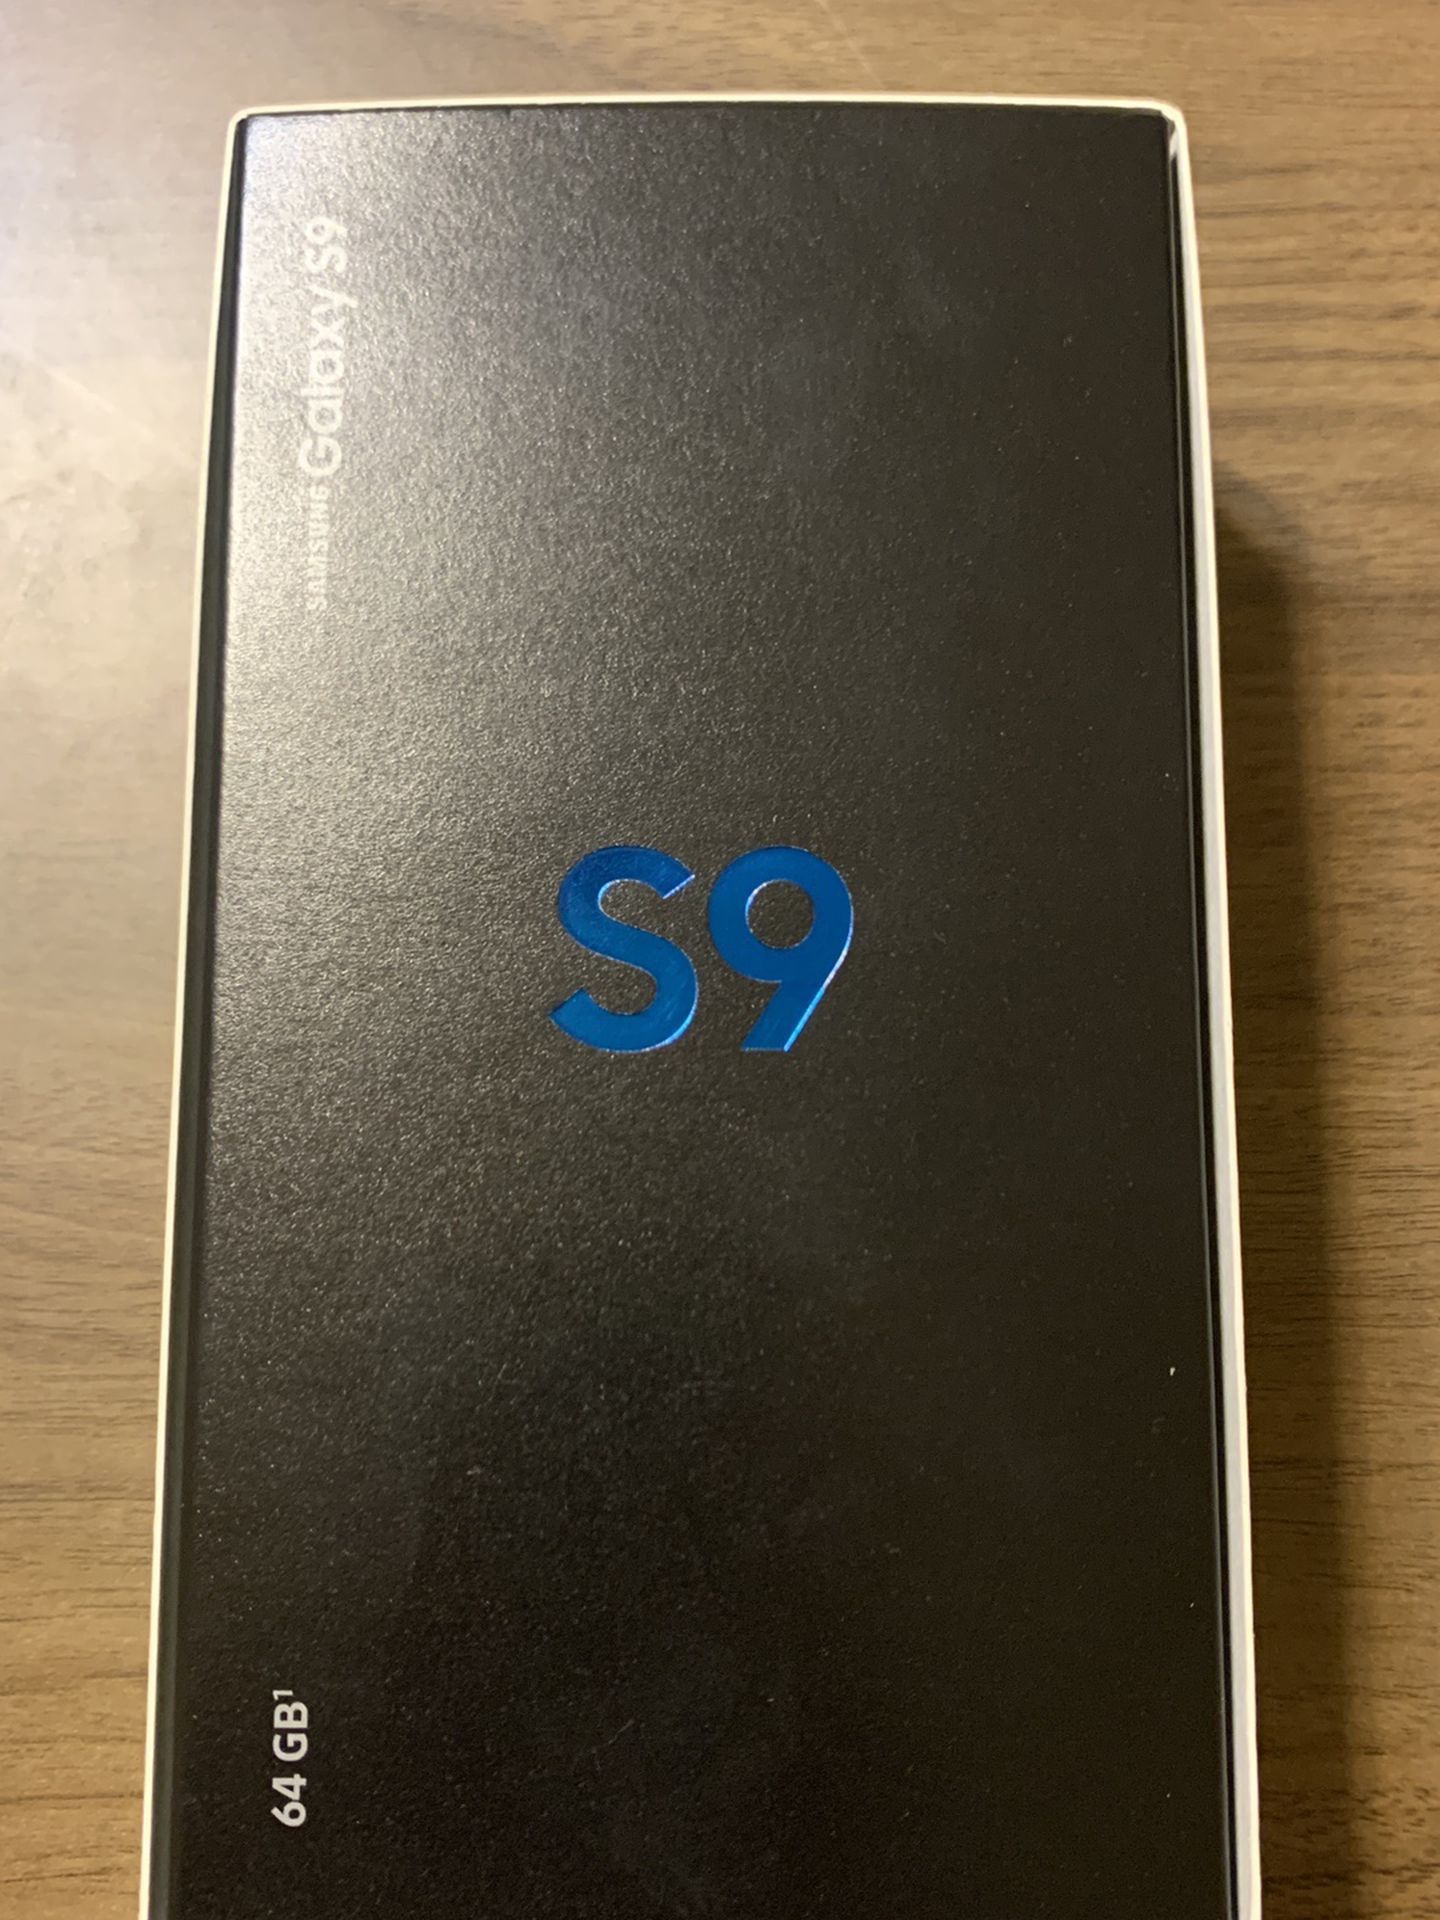 Brand New Straight Talk Samsung Galaxy S9 SM-G960U1 Black 64GB 5.8" Smart Phone